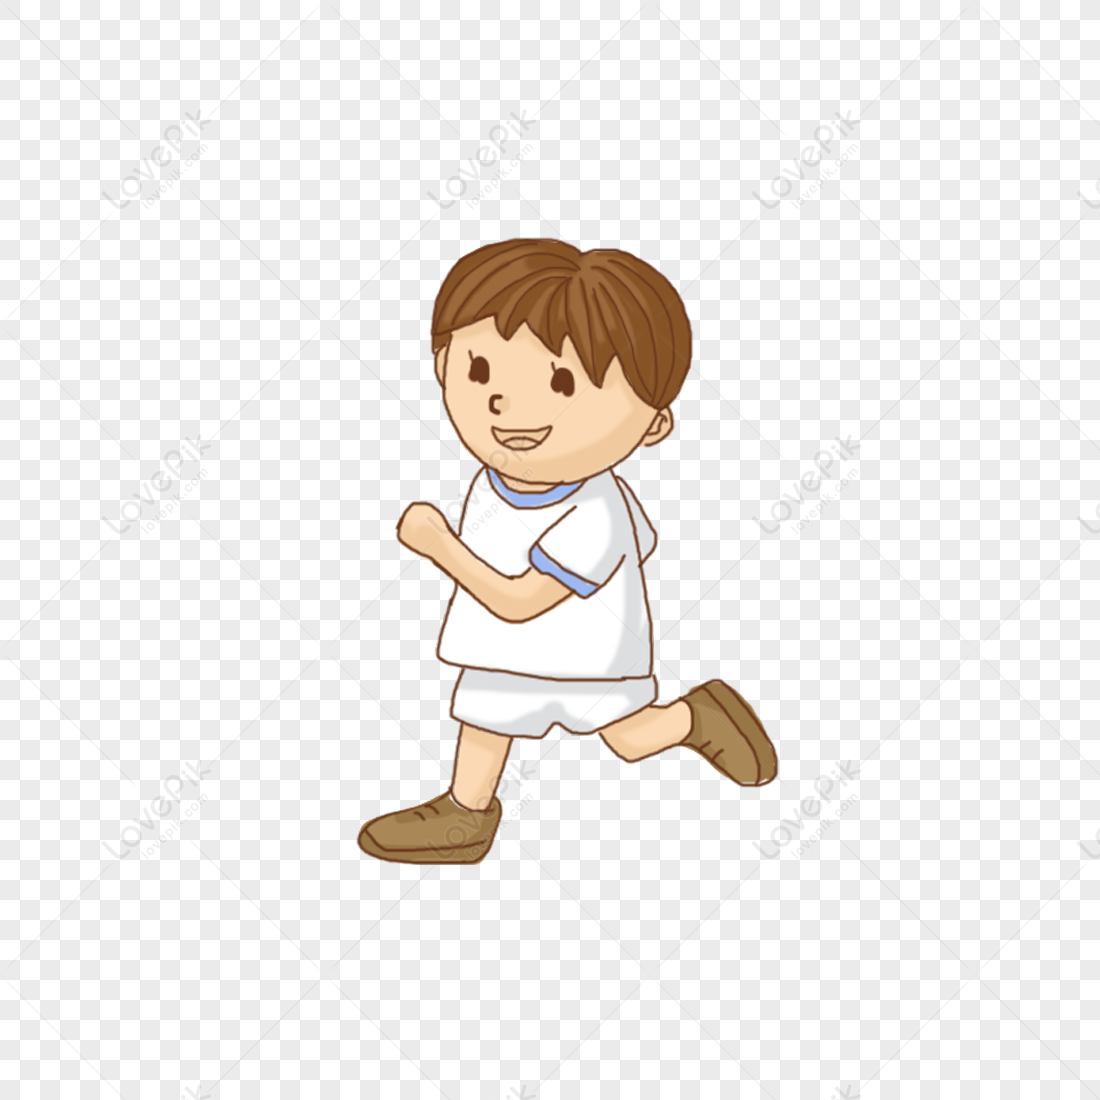 Gambar Running Boy PNG Unduh Gratis - Lovepik